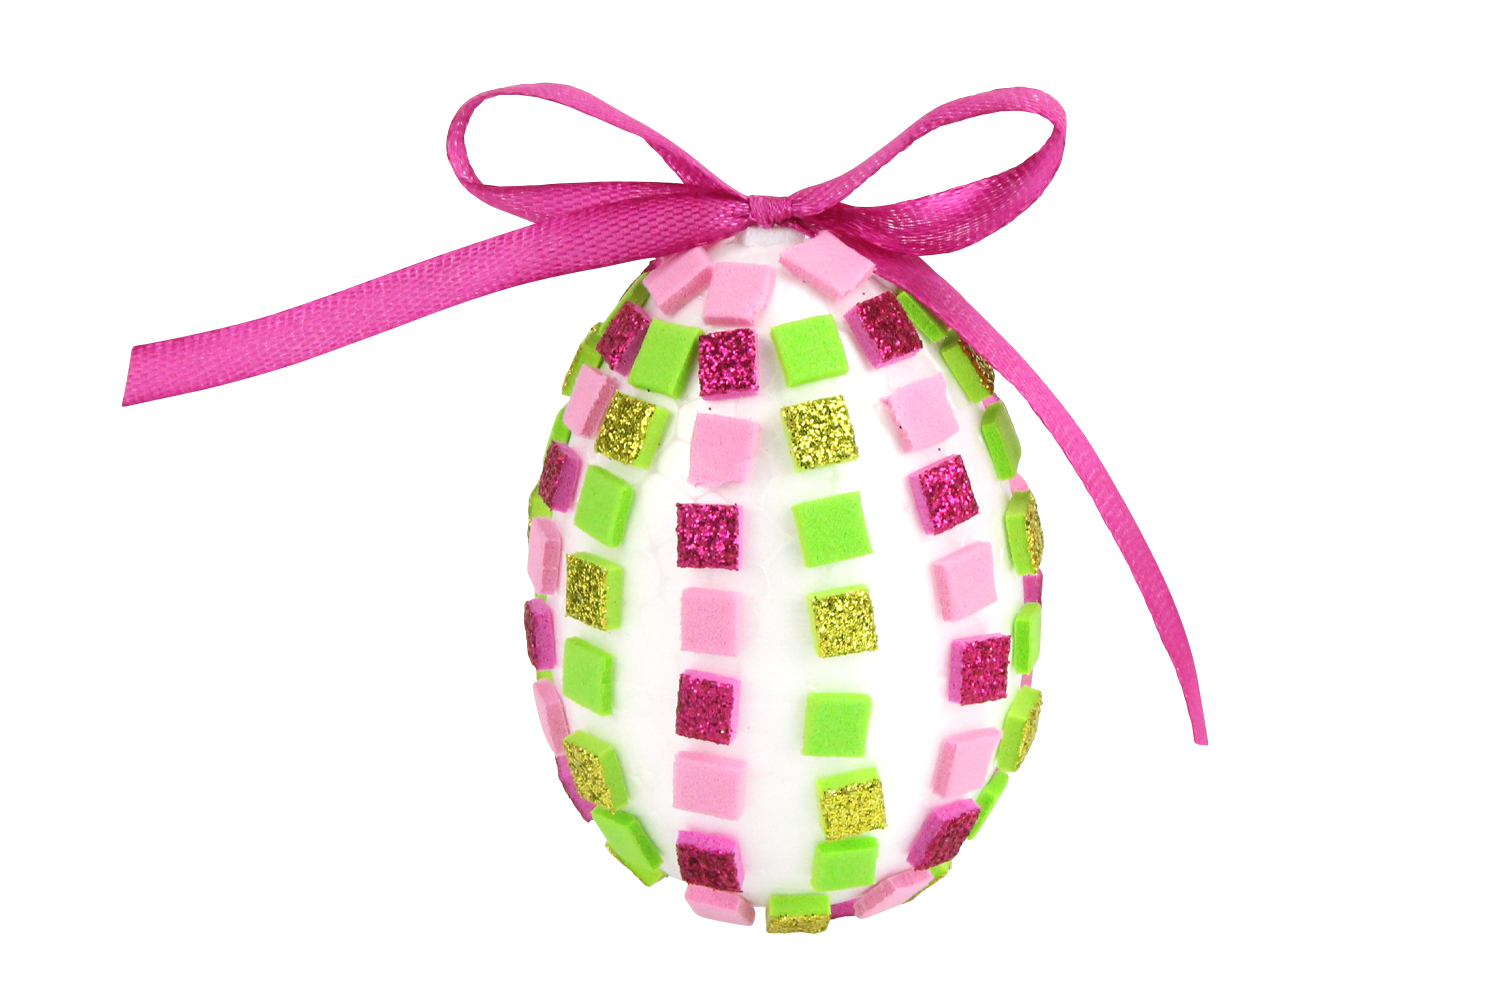 Kit 6 œufs à décorer en mosaiques - Kits créatifs Pâques - 10 Doigts